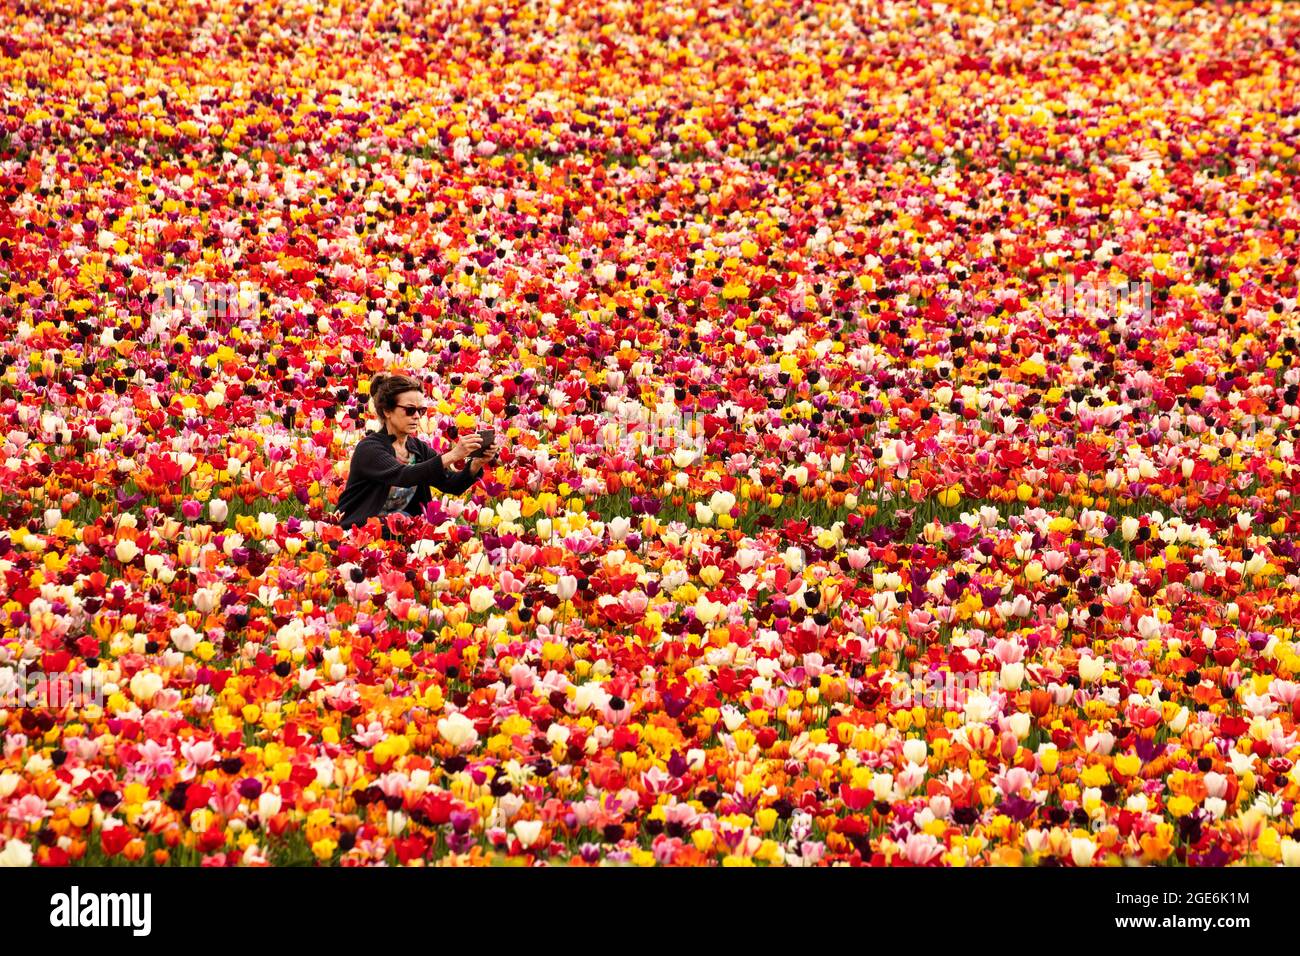 Pays-Bas, Noordwijkerhout, Tulips, champs de tulipes. Modèle libéré. Banque D'Images